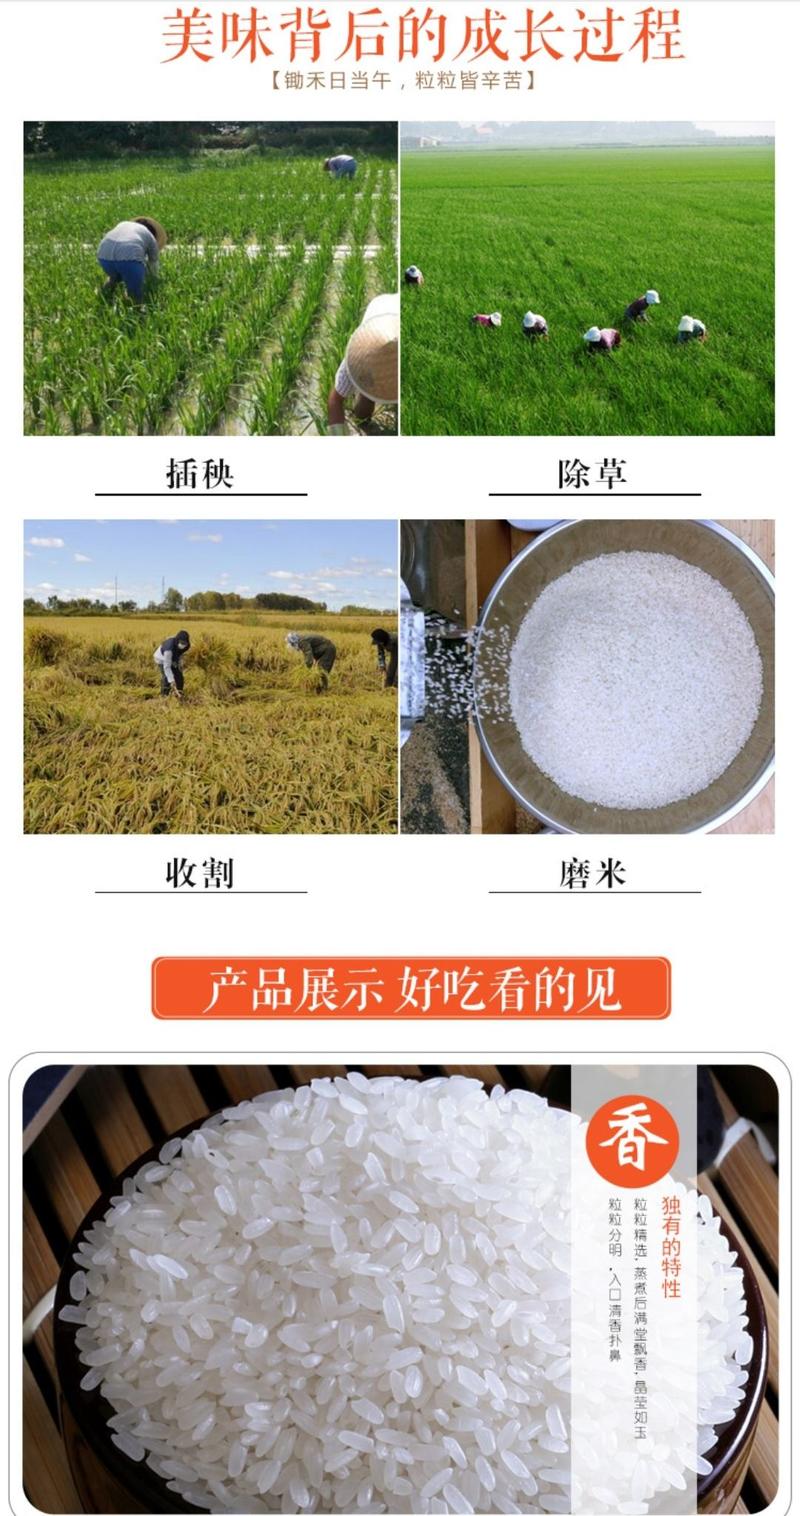 新米安徽大米10斤乡润丝苗米5kg长粒米非真空炒饭煲仔饭